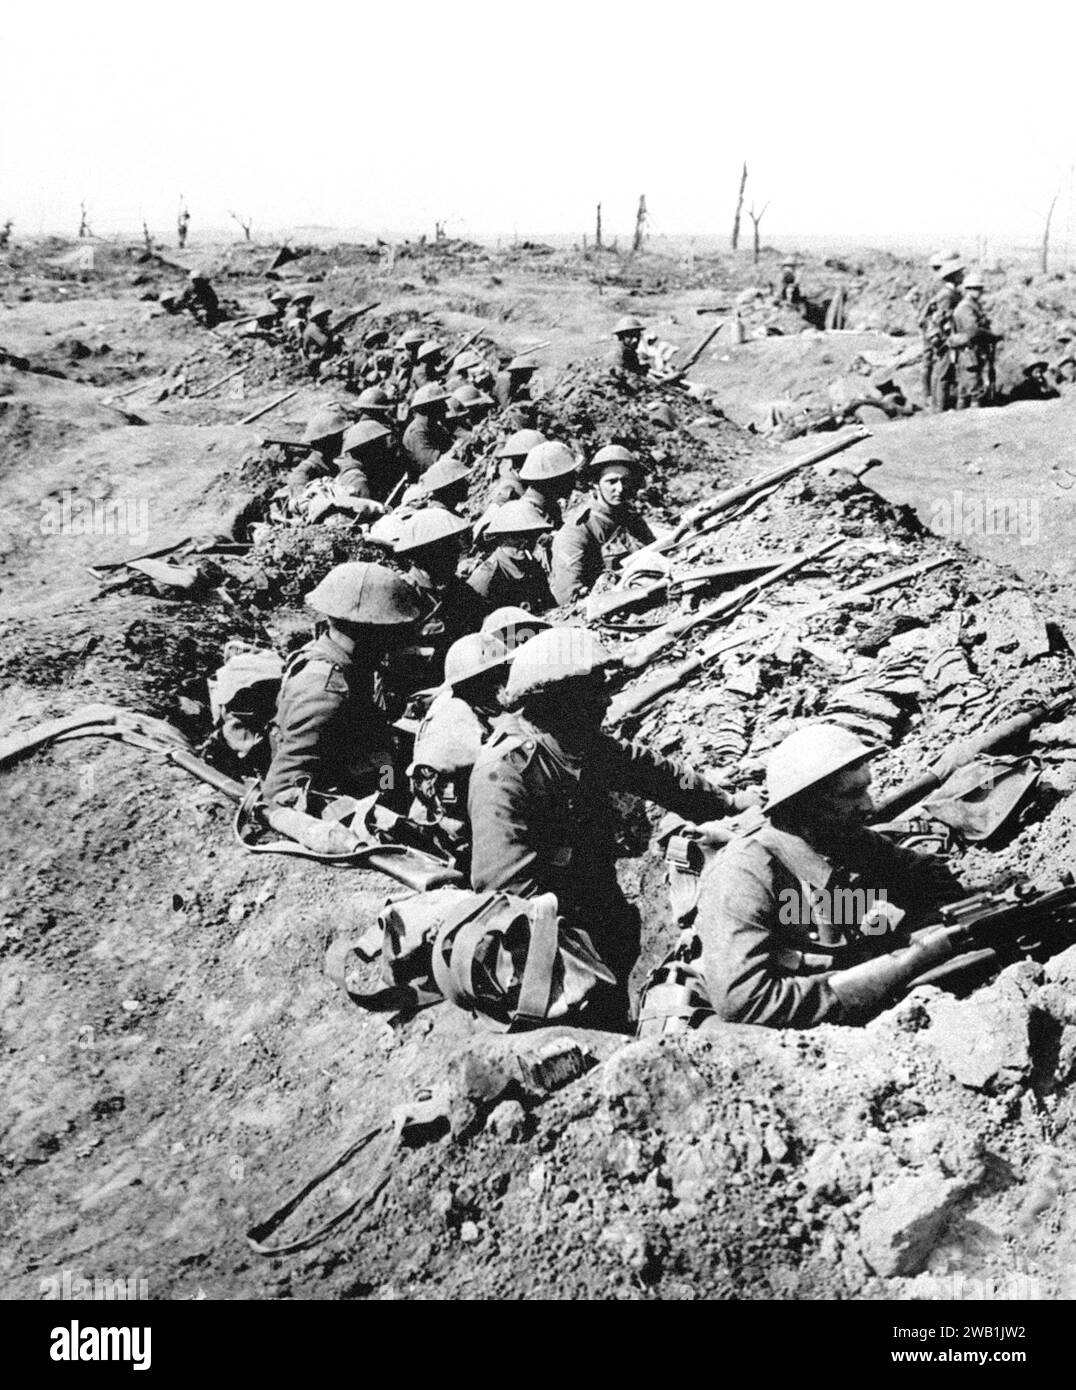 Aktenfoto vom 7/1916 von britischen Infanteristen besetzen einen flachen Graben in einer ruinösen Landschaft, bevor sie während der Schlacht an der Somme vormarschieren. Britische Wissenschaftler haben „spannende und bedeutsame“ neue Einblicke gefunden, wie deutsche Soldaten einen Krater, der nach einer Minenexplosion durch die Briten geschaffen wurde, während des Ersten Weltkriegs zu ihrem Vorteil nutzten. Die Detonation des Hawthorn Ridge in der Nähe des Dorfes Beaumont Hamel in Frankreich bedeutete den Beginn der Schlacht an der Somme am Morgen des 1. Juli 1916 – oft als der blutigste Tag in der Geschichte der britischen Armee bezeichnet. Ausgabedatum: MO Stockfoto